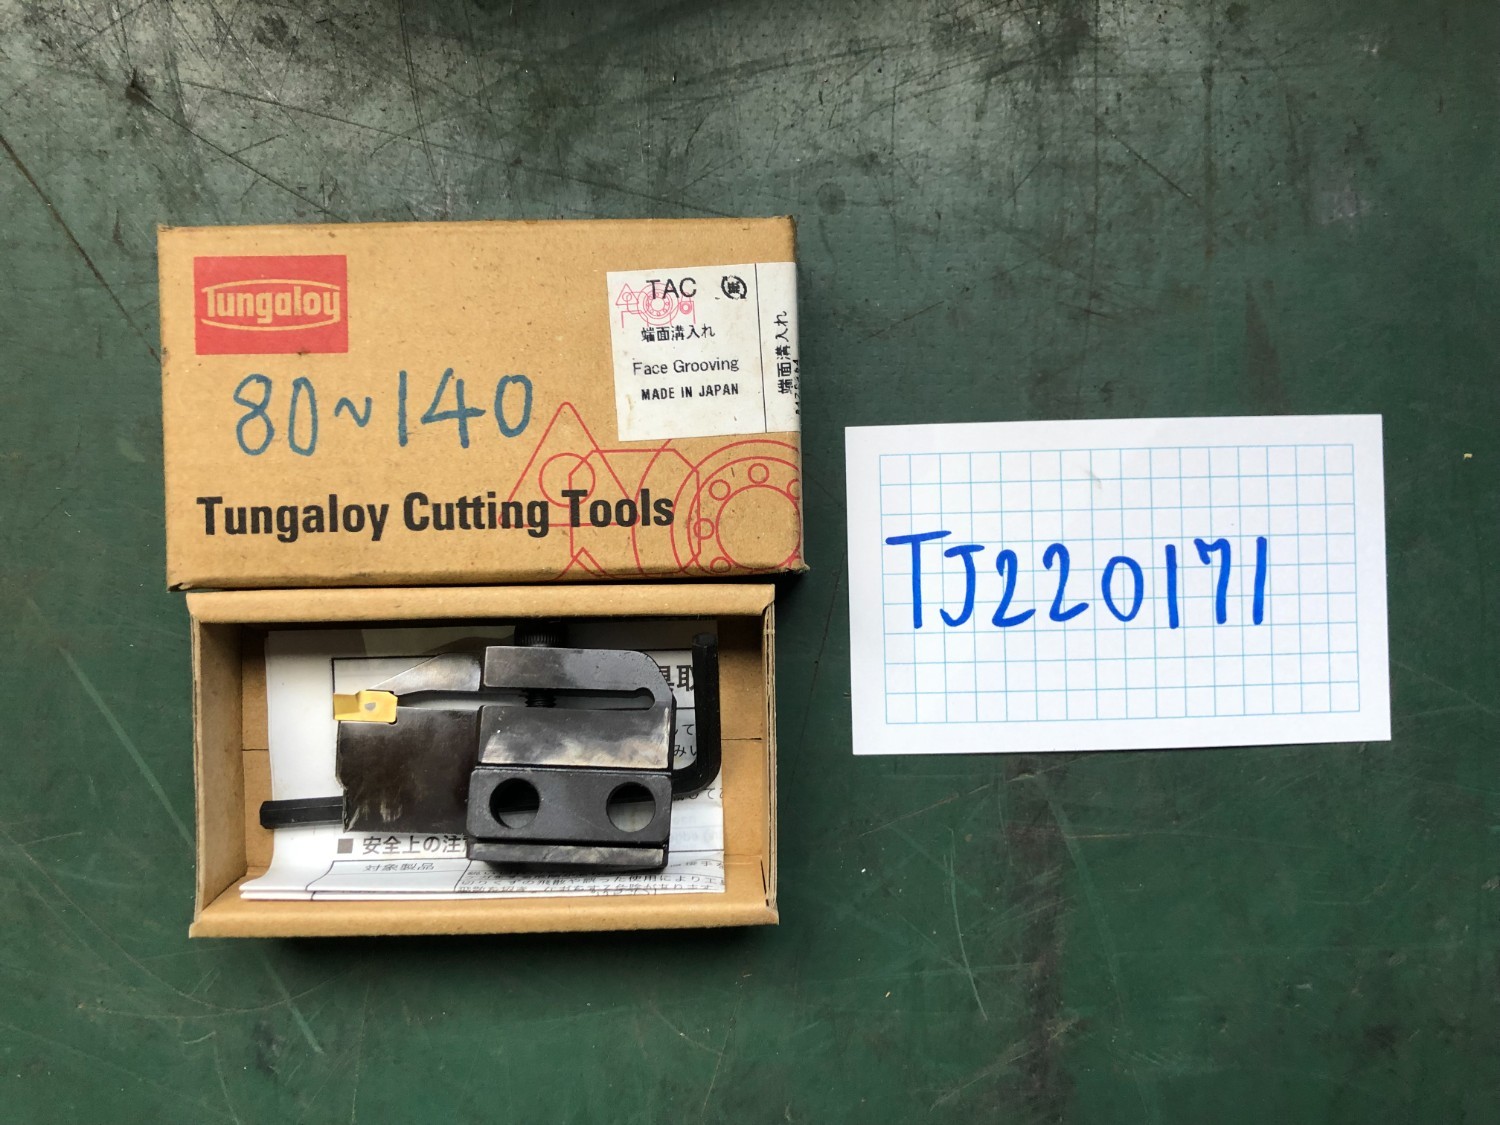 中古Other turning tools 「外径用TACバイト」40D80140L   タンガロイ/Tungaloy